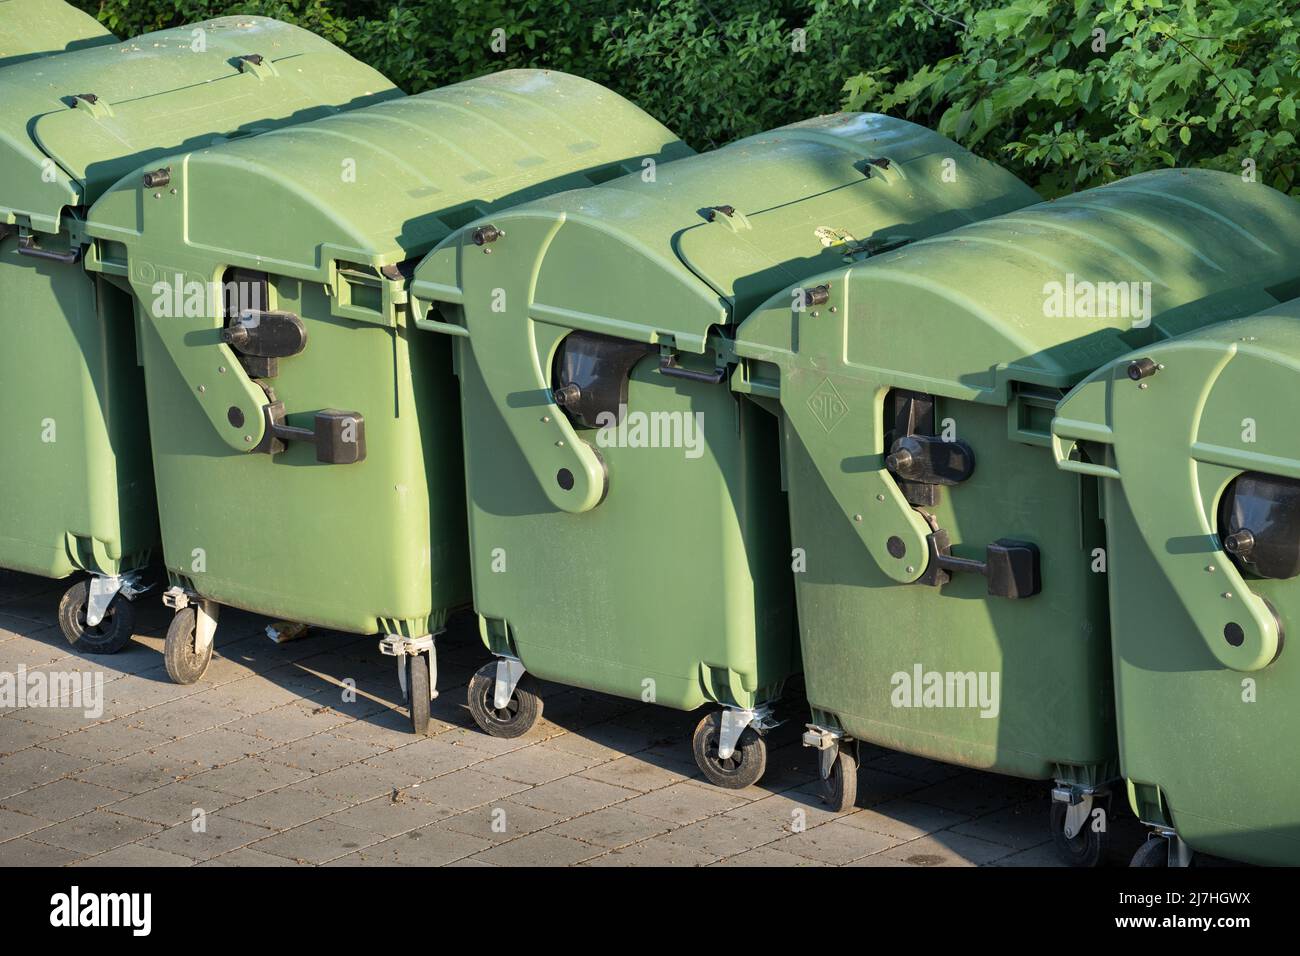 Les conteneurs de déchets dans lesquels les déchets ont été collectés sont prêts à être retirés ou vidés. Banque D'Images